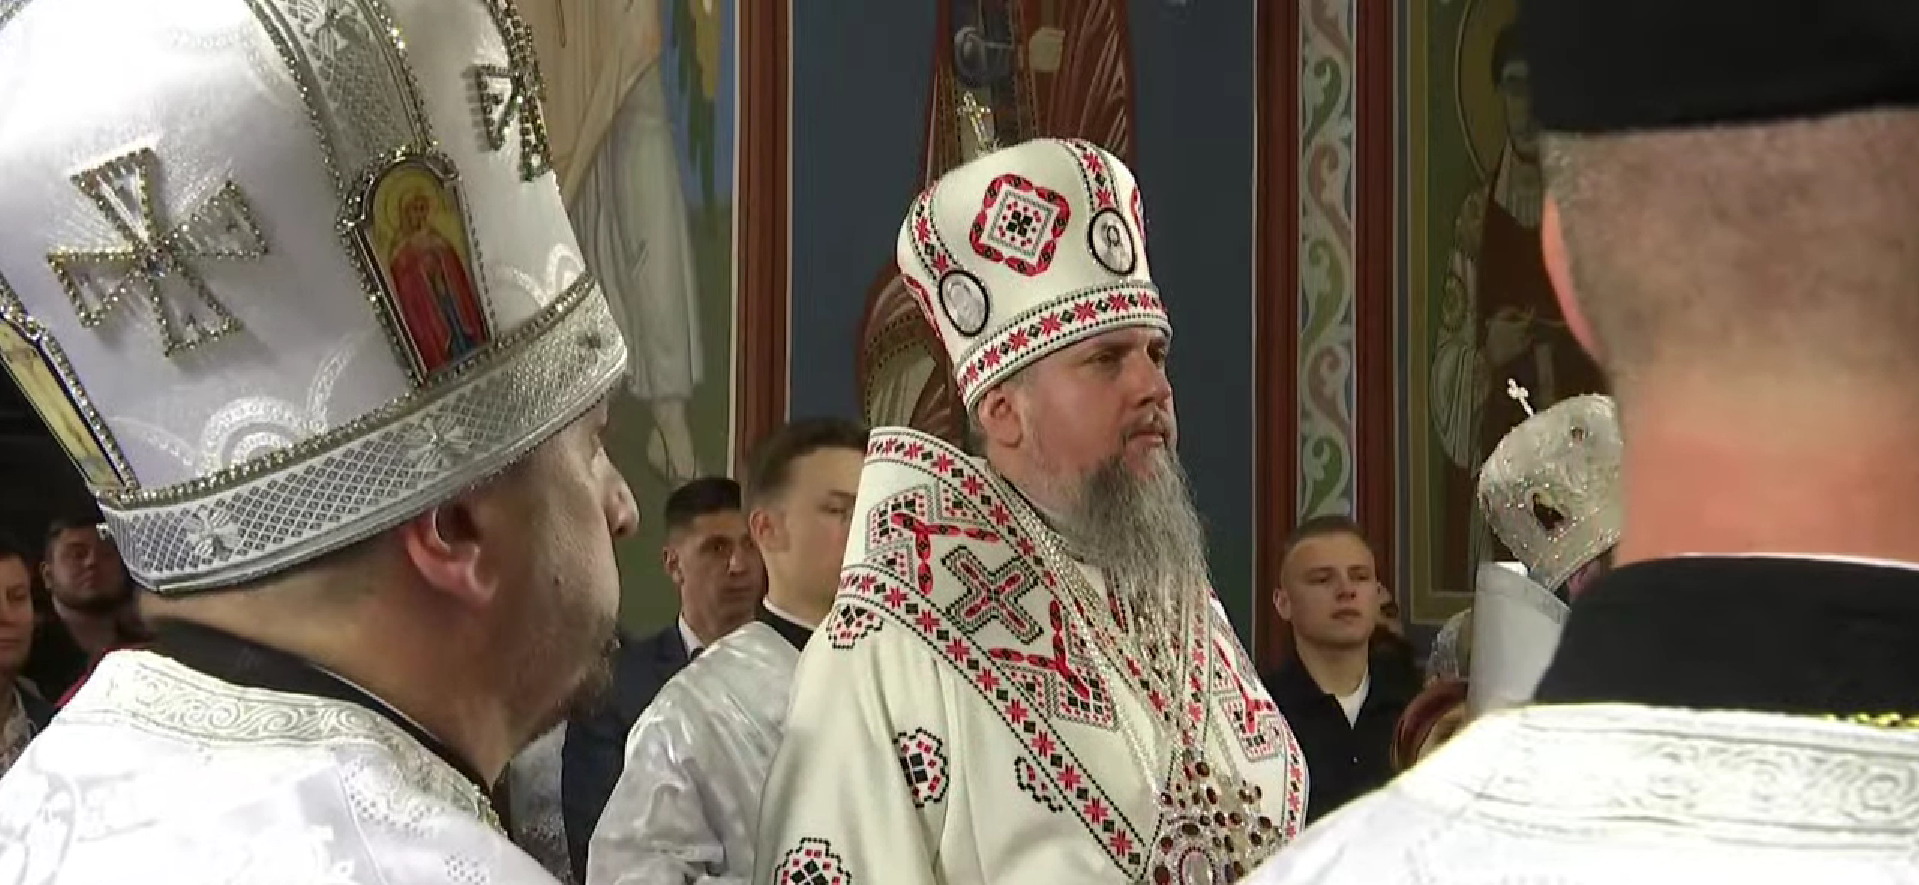 Пасхальное богослужение в Михайловском Златоверхом соборе ПЦУ: онлайн